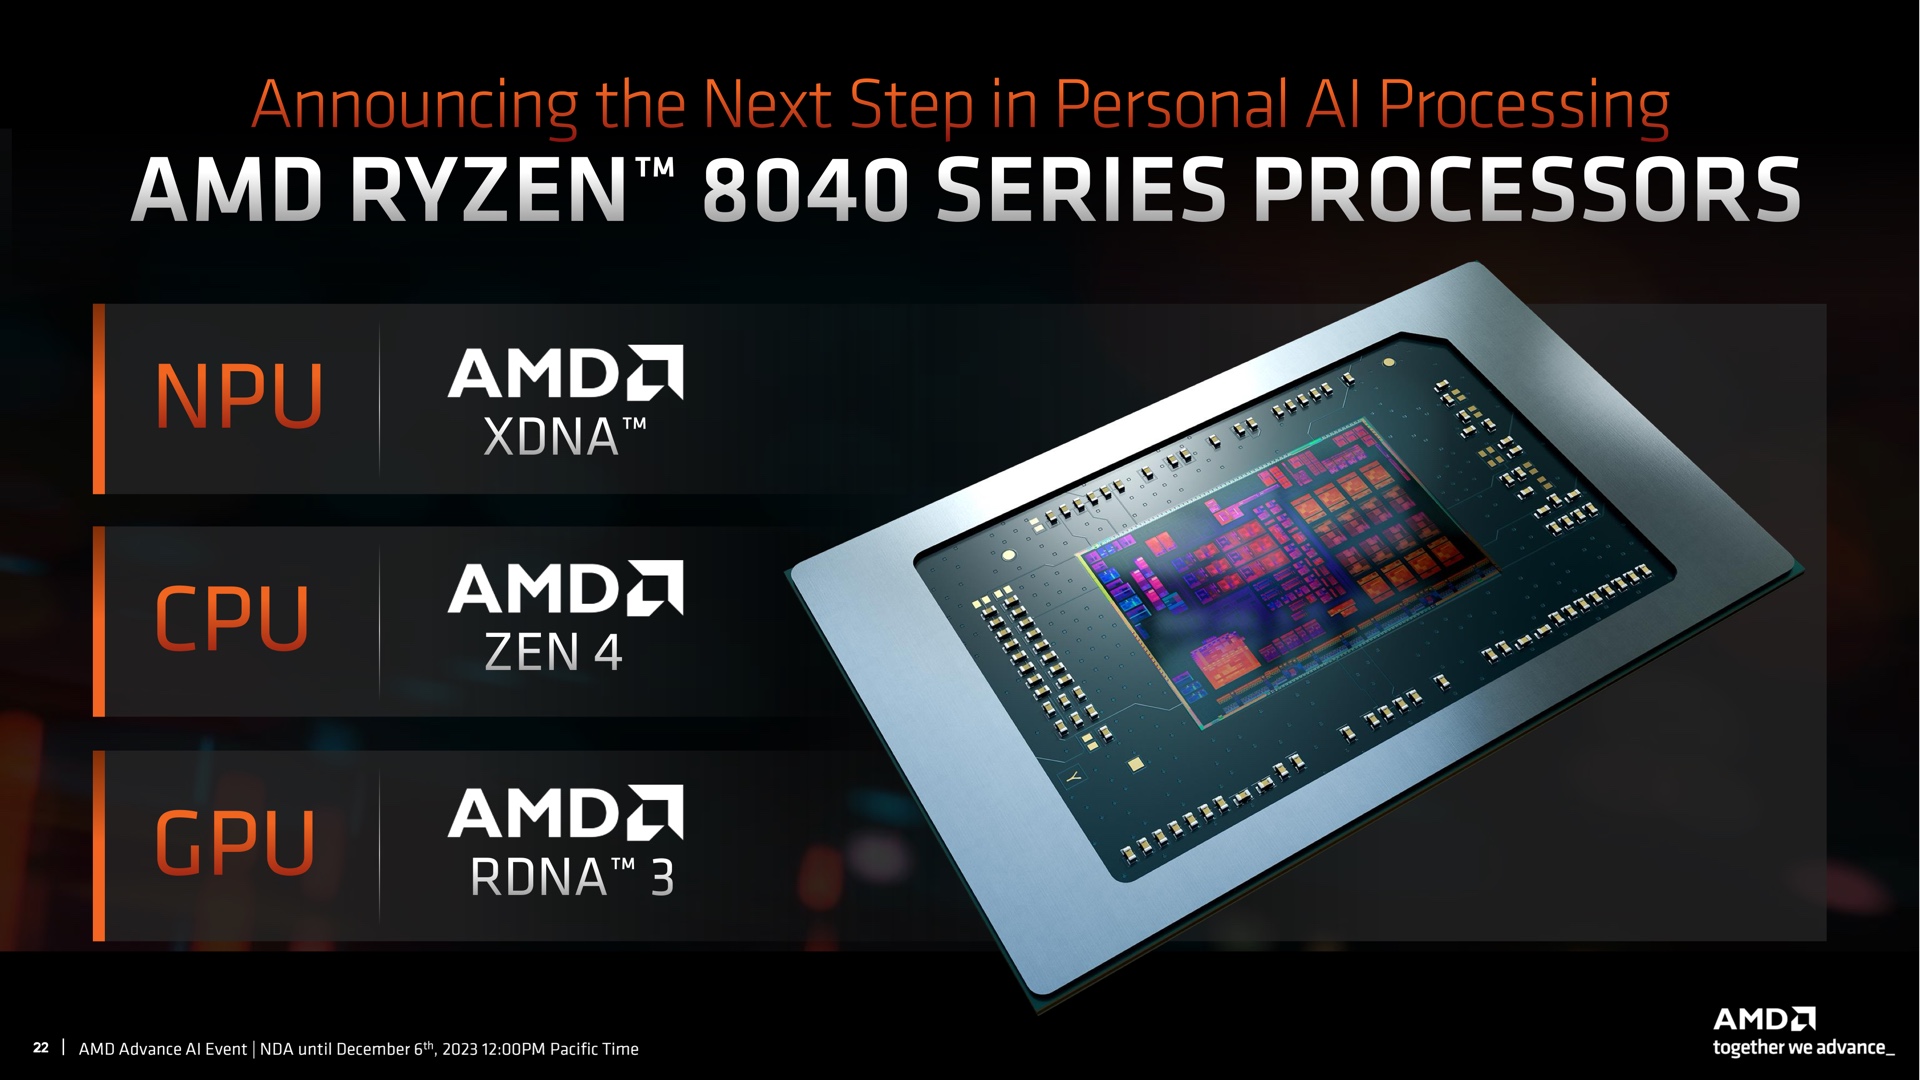 AMD kondigde abrupt mobiele Ryzen 8040-processors aan met Zen 4-kernen, RDNA 3-graphics en XDNA NPU-neurale chip